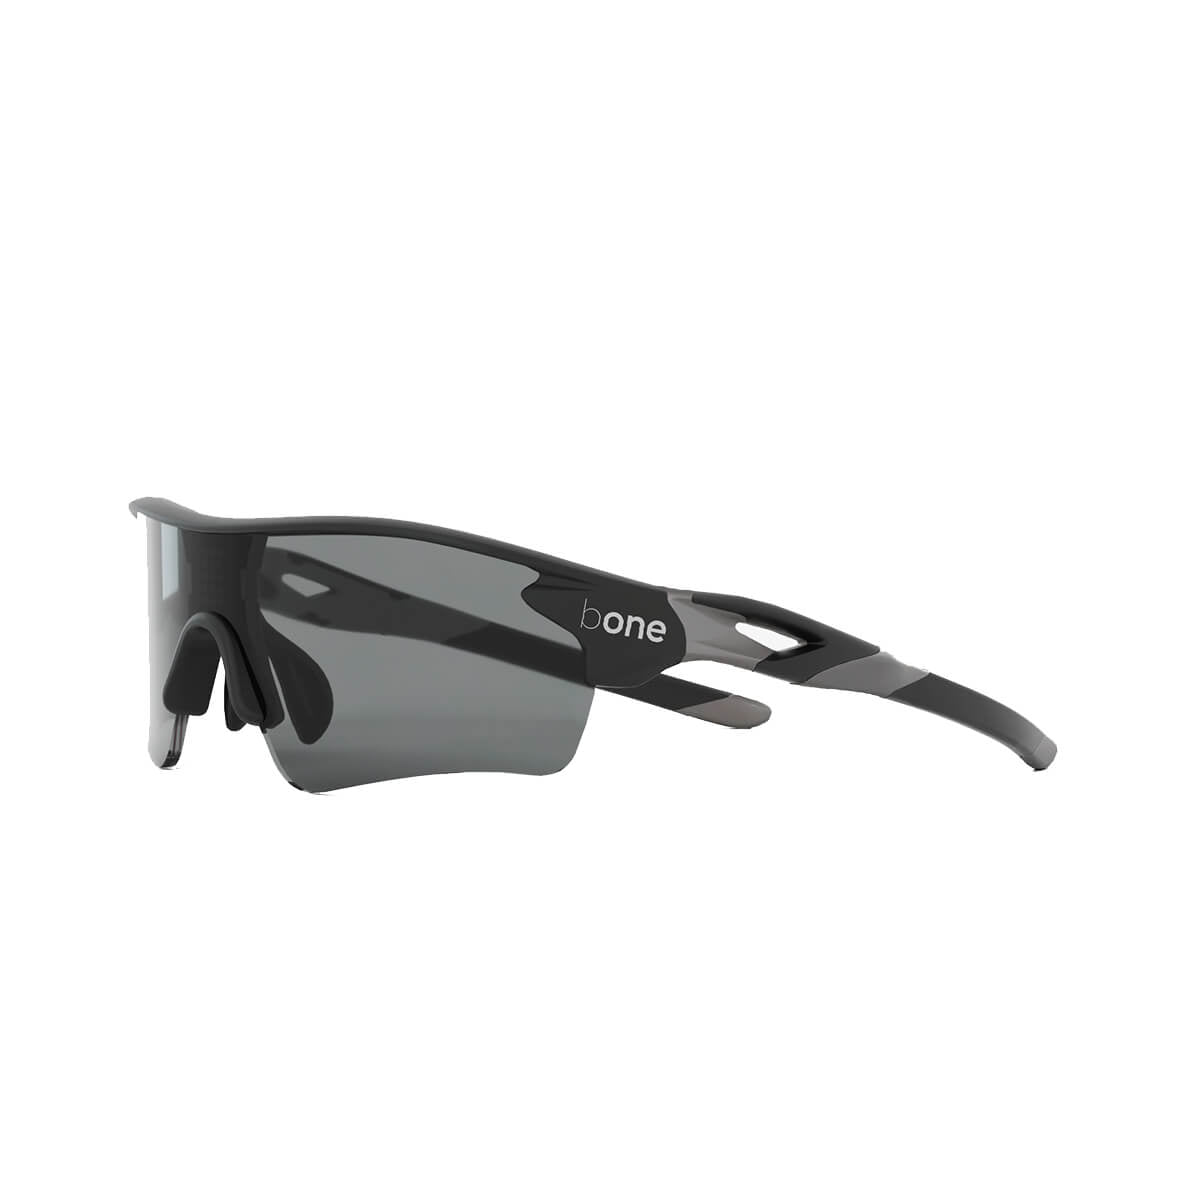 bONE Tech SunBRKR Glasses Platinum GRAY MATT